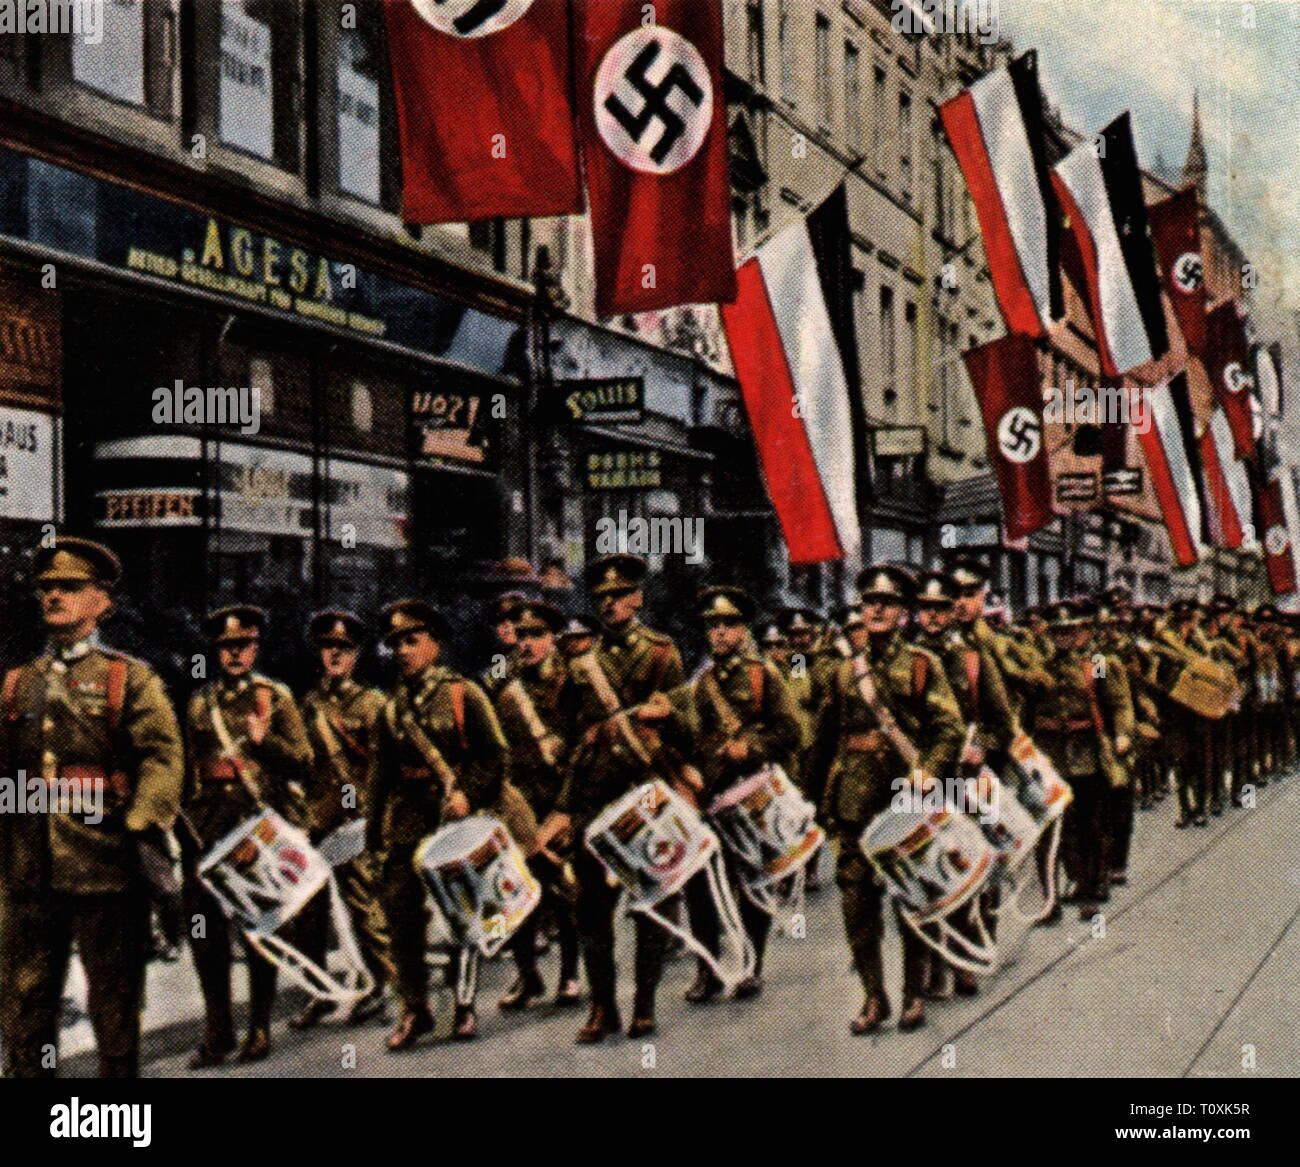 Grande-bretagne, militaire, armée, défilé des troupes britanniques de Sarrebruck, décembre 1934, Additional-Rights Clearance-Info-Not-Available- Banque D'Images